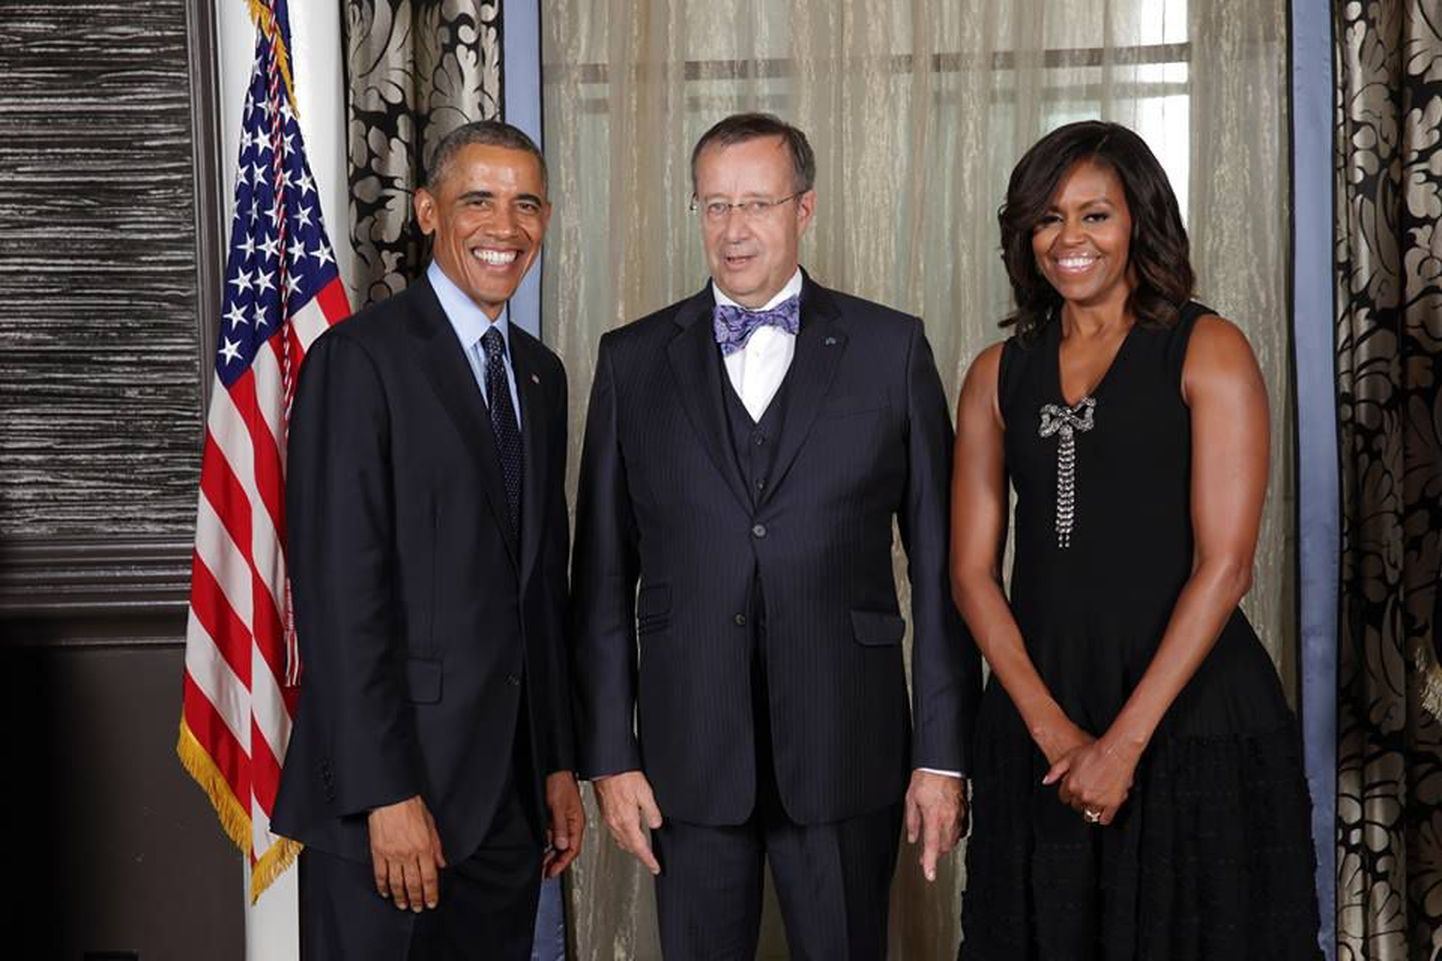 Ameerika Ühendriikide riigipea Barack Obama pidulik vastuvõtt ÜRO Peaassamblee avaistungi puhul. Toomas Hendrik Ilves poseerimas Barack Obama ja Michelle Obama vahel.